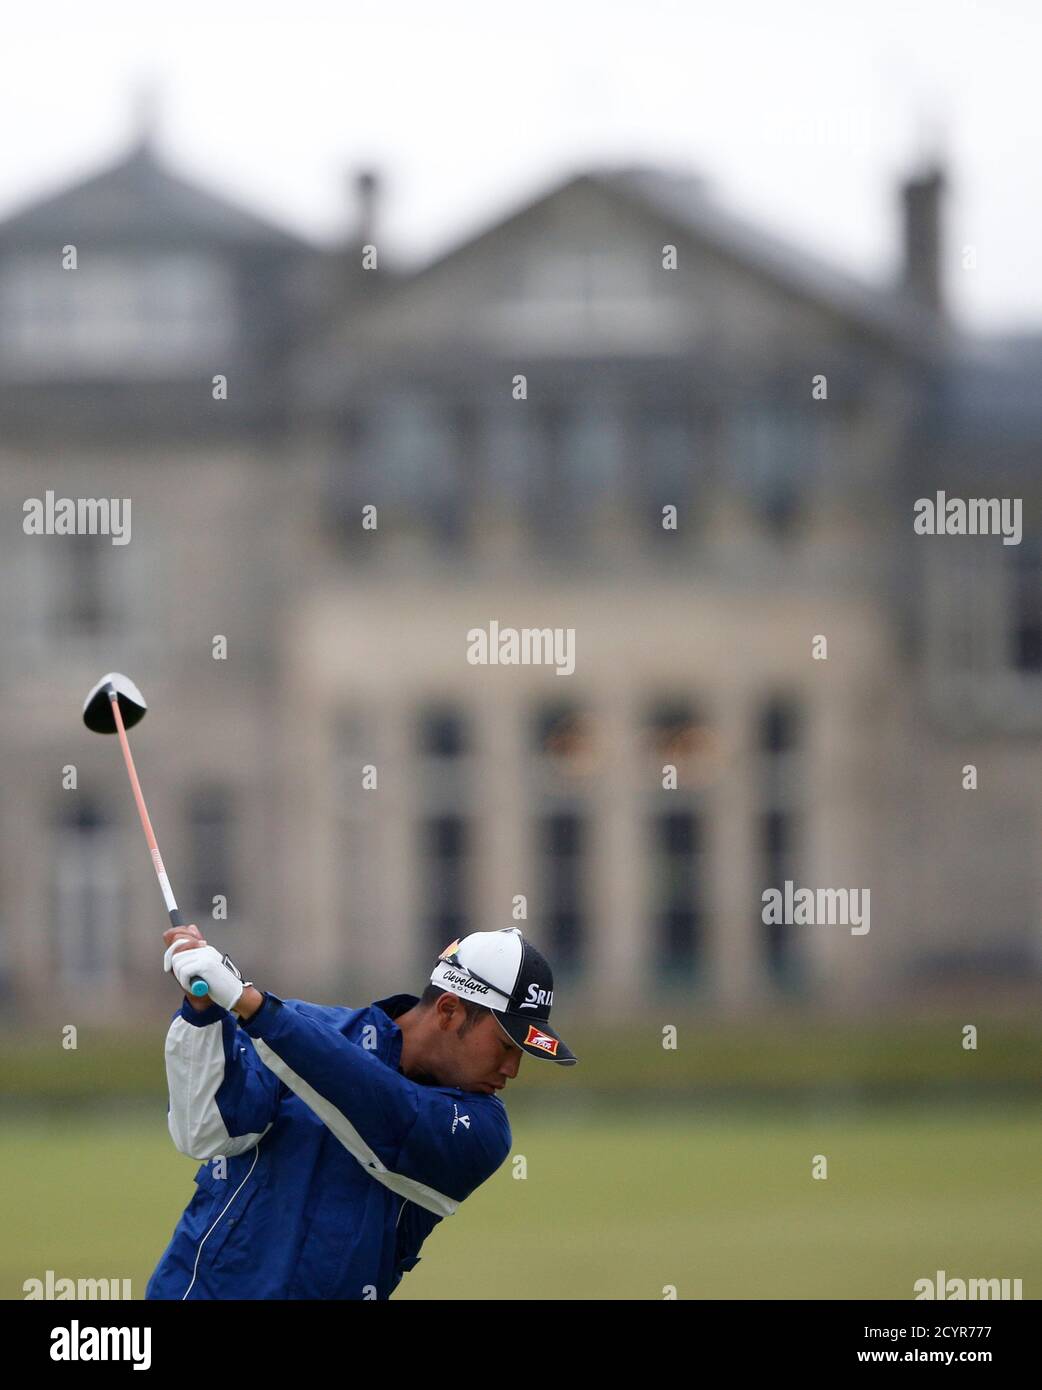 Hideki Matsuyama, du Japon, débarque du 18e tee lors d'un tour d'entraînement devant le championnat de golf British Open sur le Old course à St. Andrews, en Écosse, le 15 juillet 2015. REUTERS/Russell Cheyne Banque D'Images